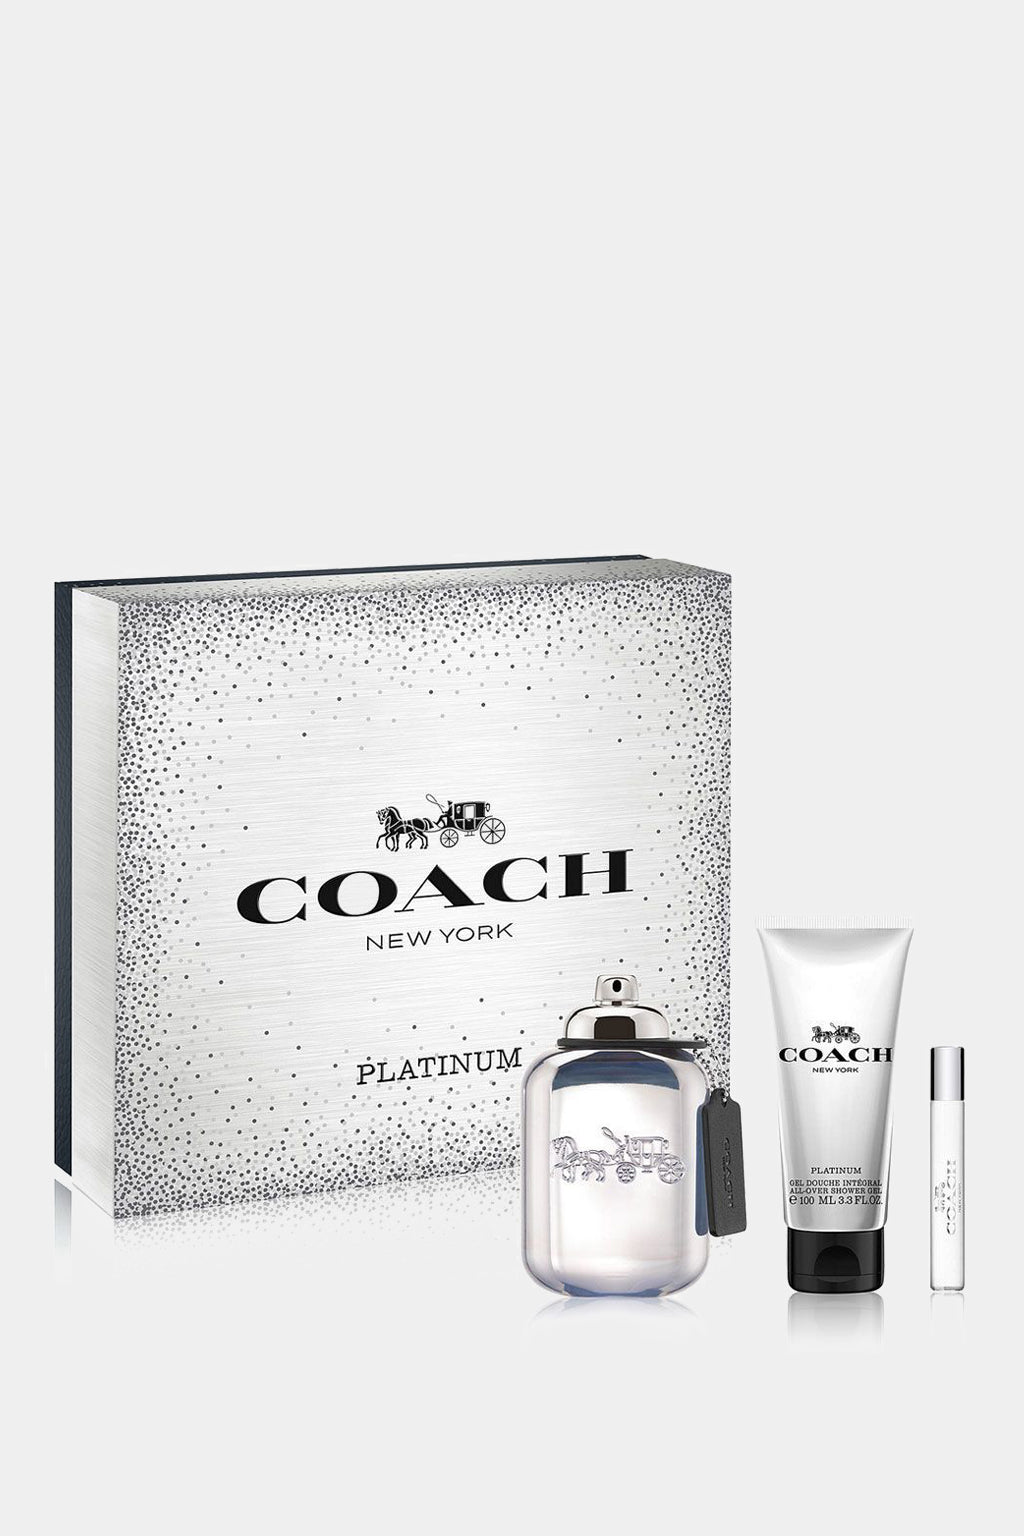 Coach - Platinum 3 Piece Set by Coach for Men